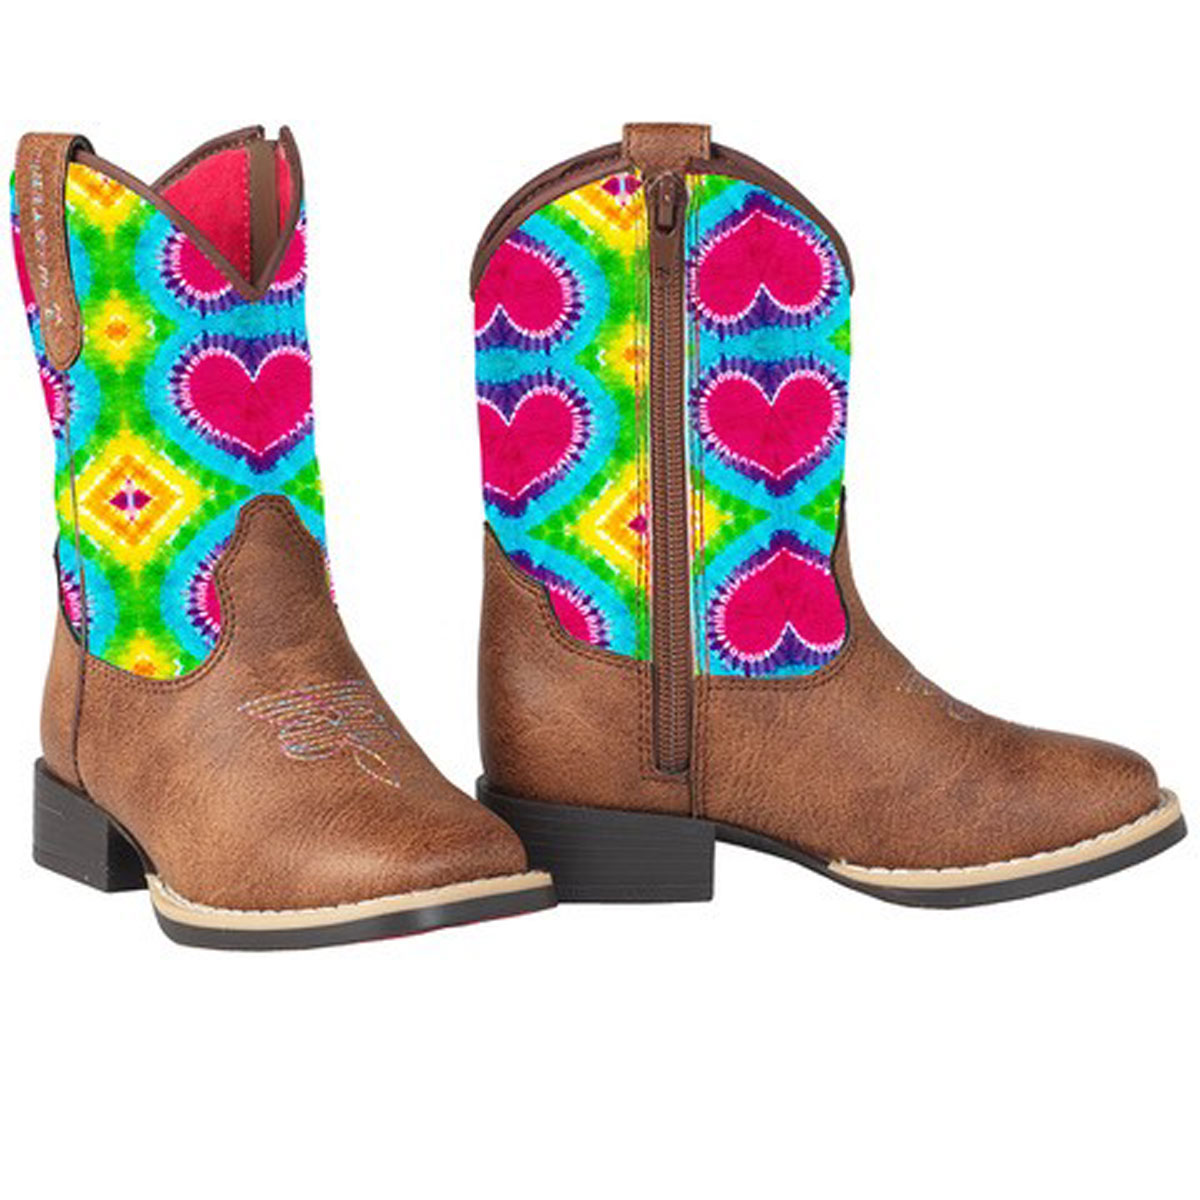 Twister Girls Abigale Western Boots w/Zipper Access - Tie Dye/Brown